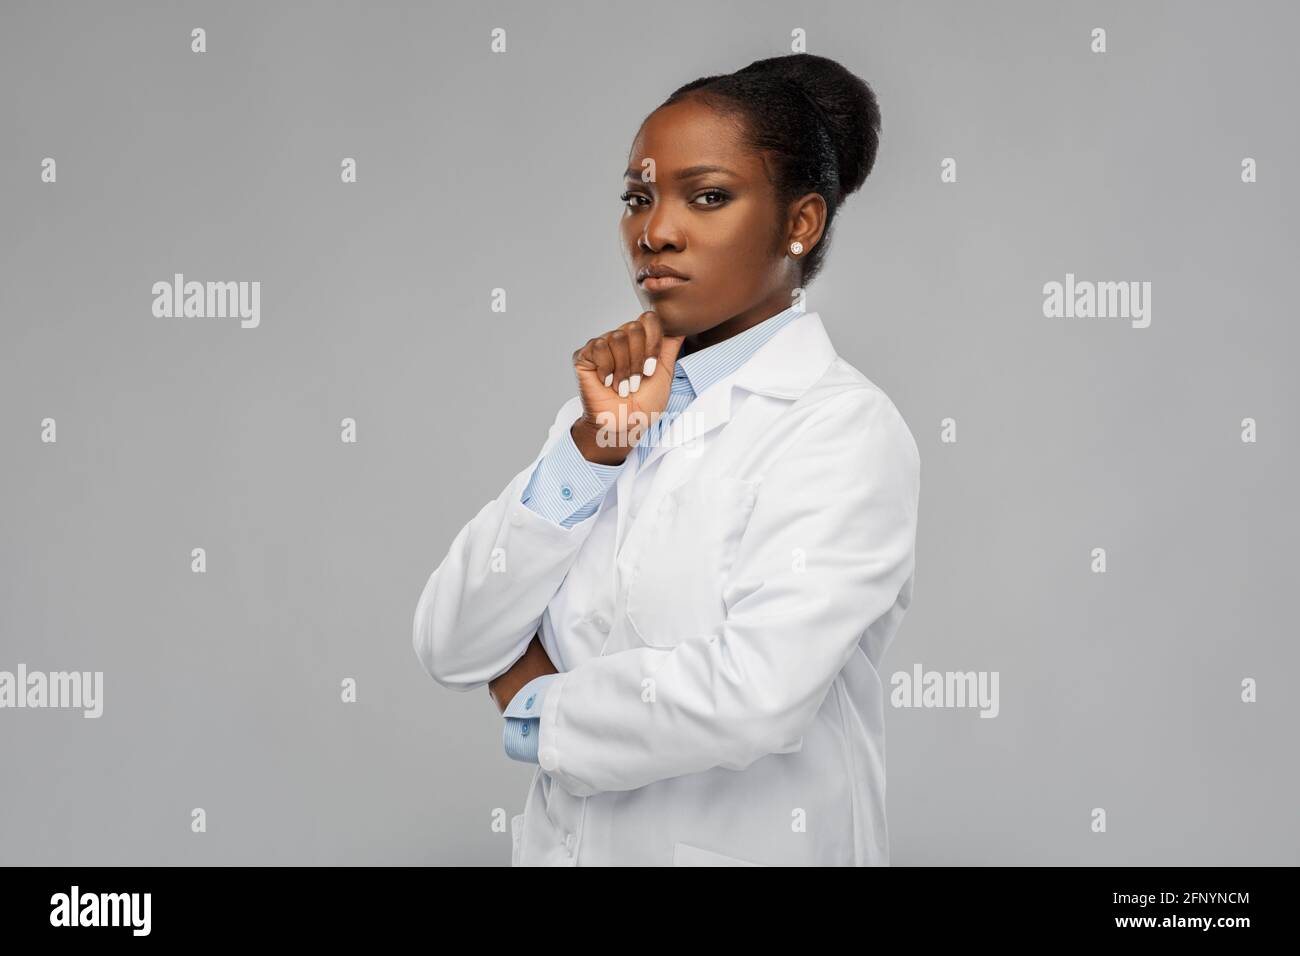 femme afro-américaine médecin ou scientifique Banque D'Images